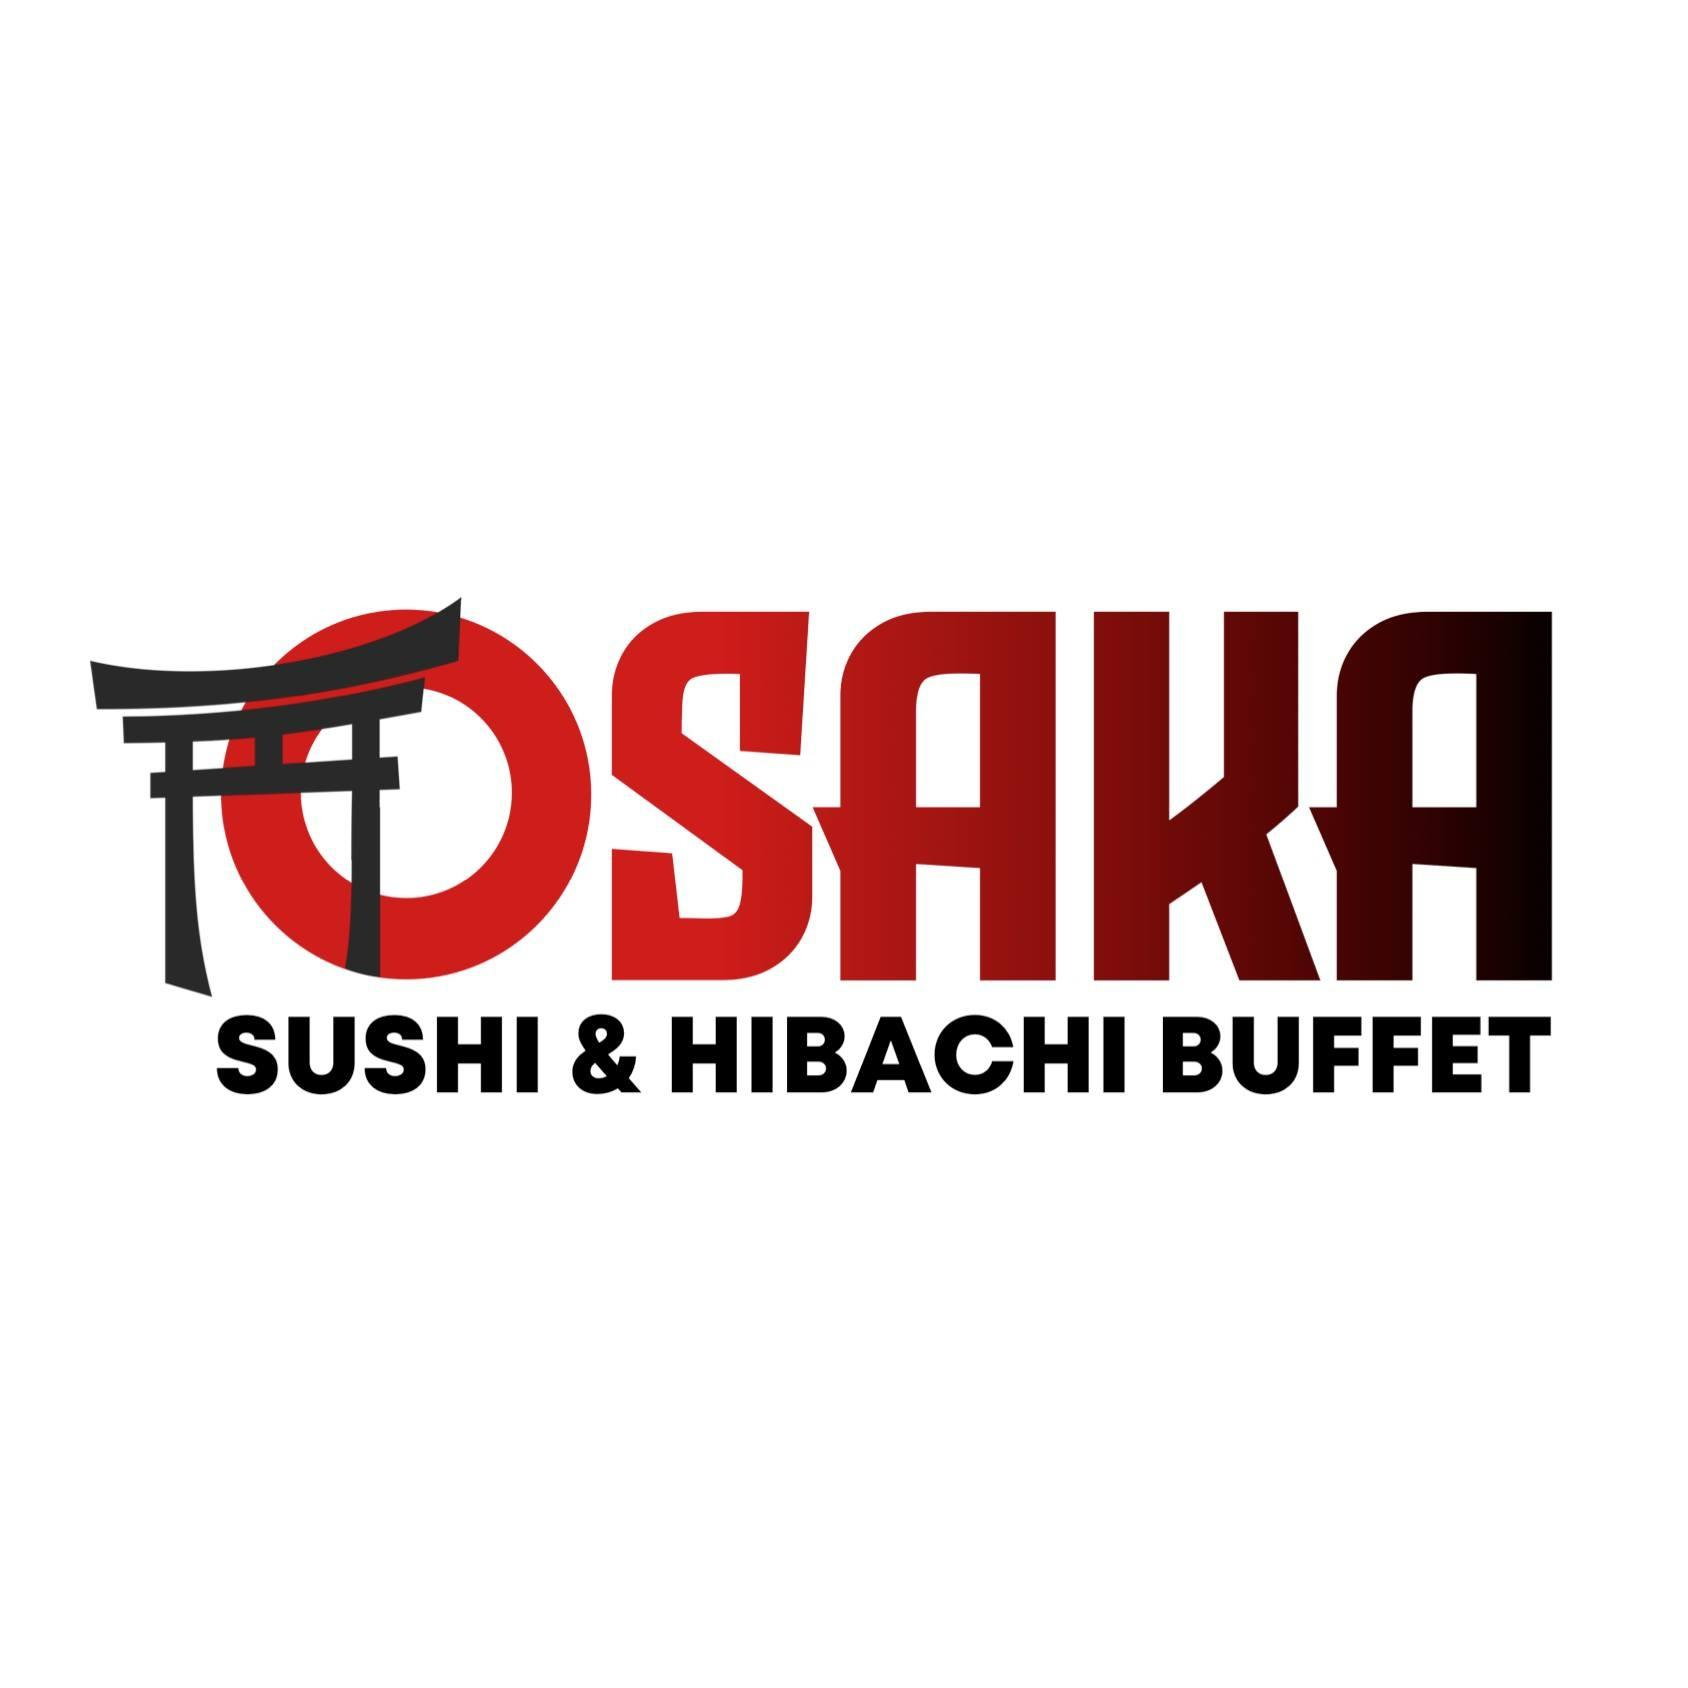 Osaka Sushi & Hibachi Buffet